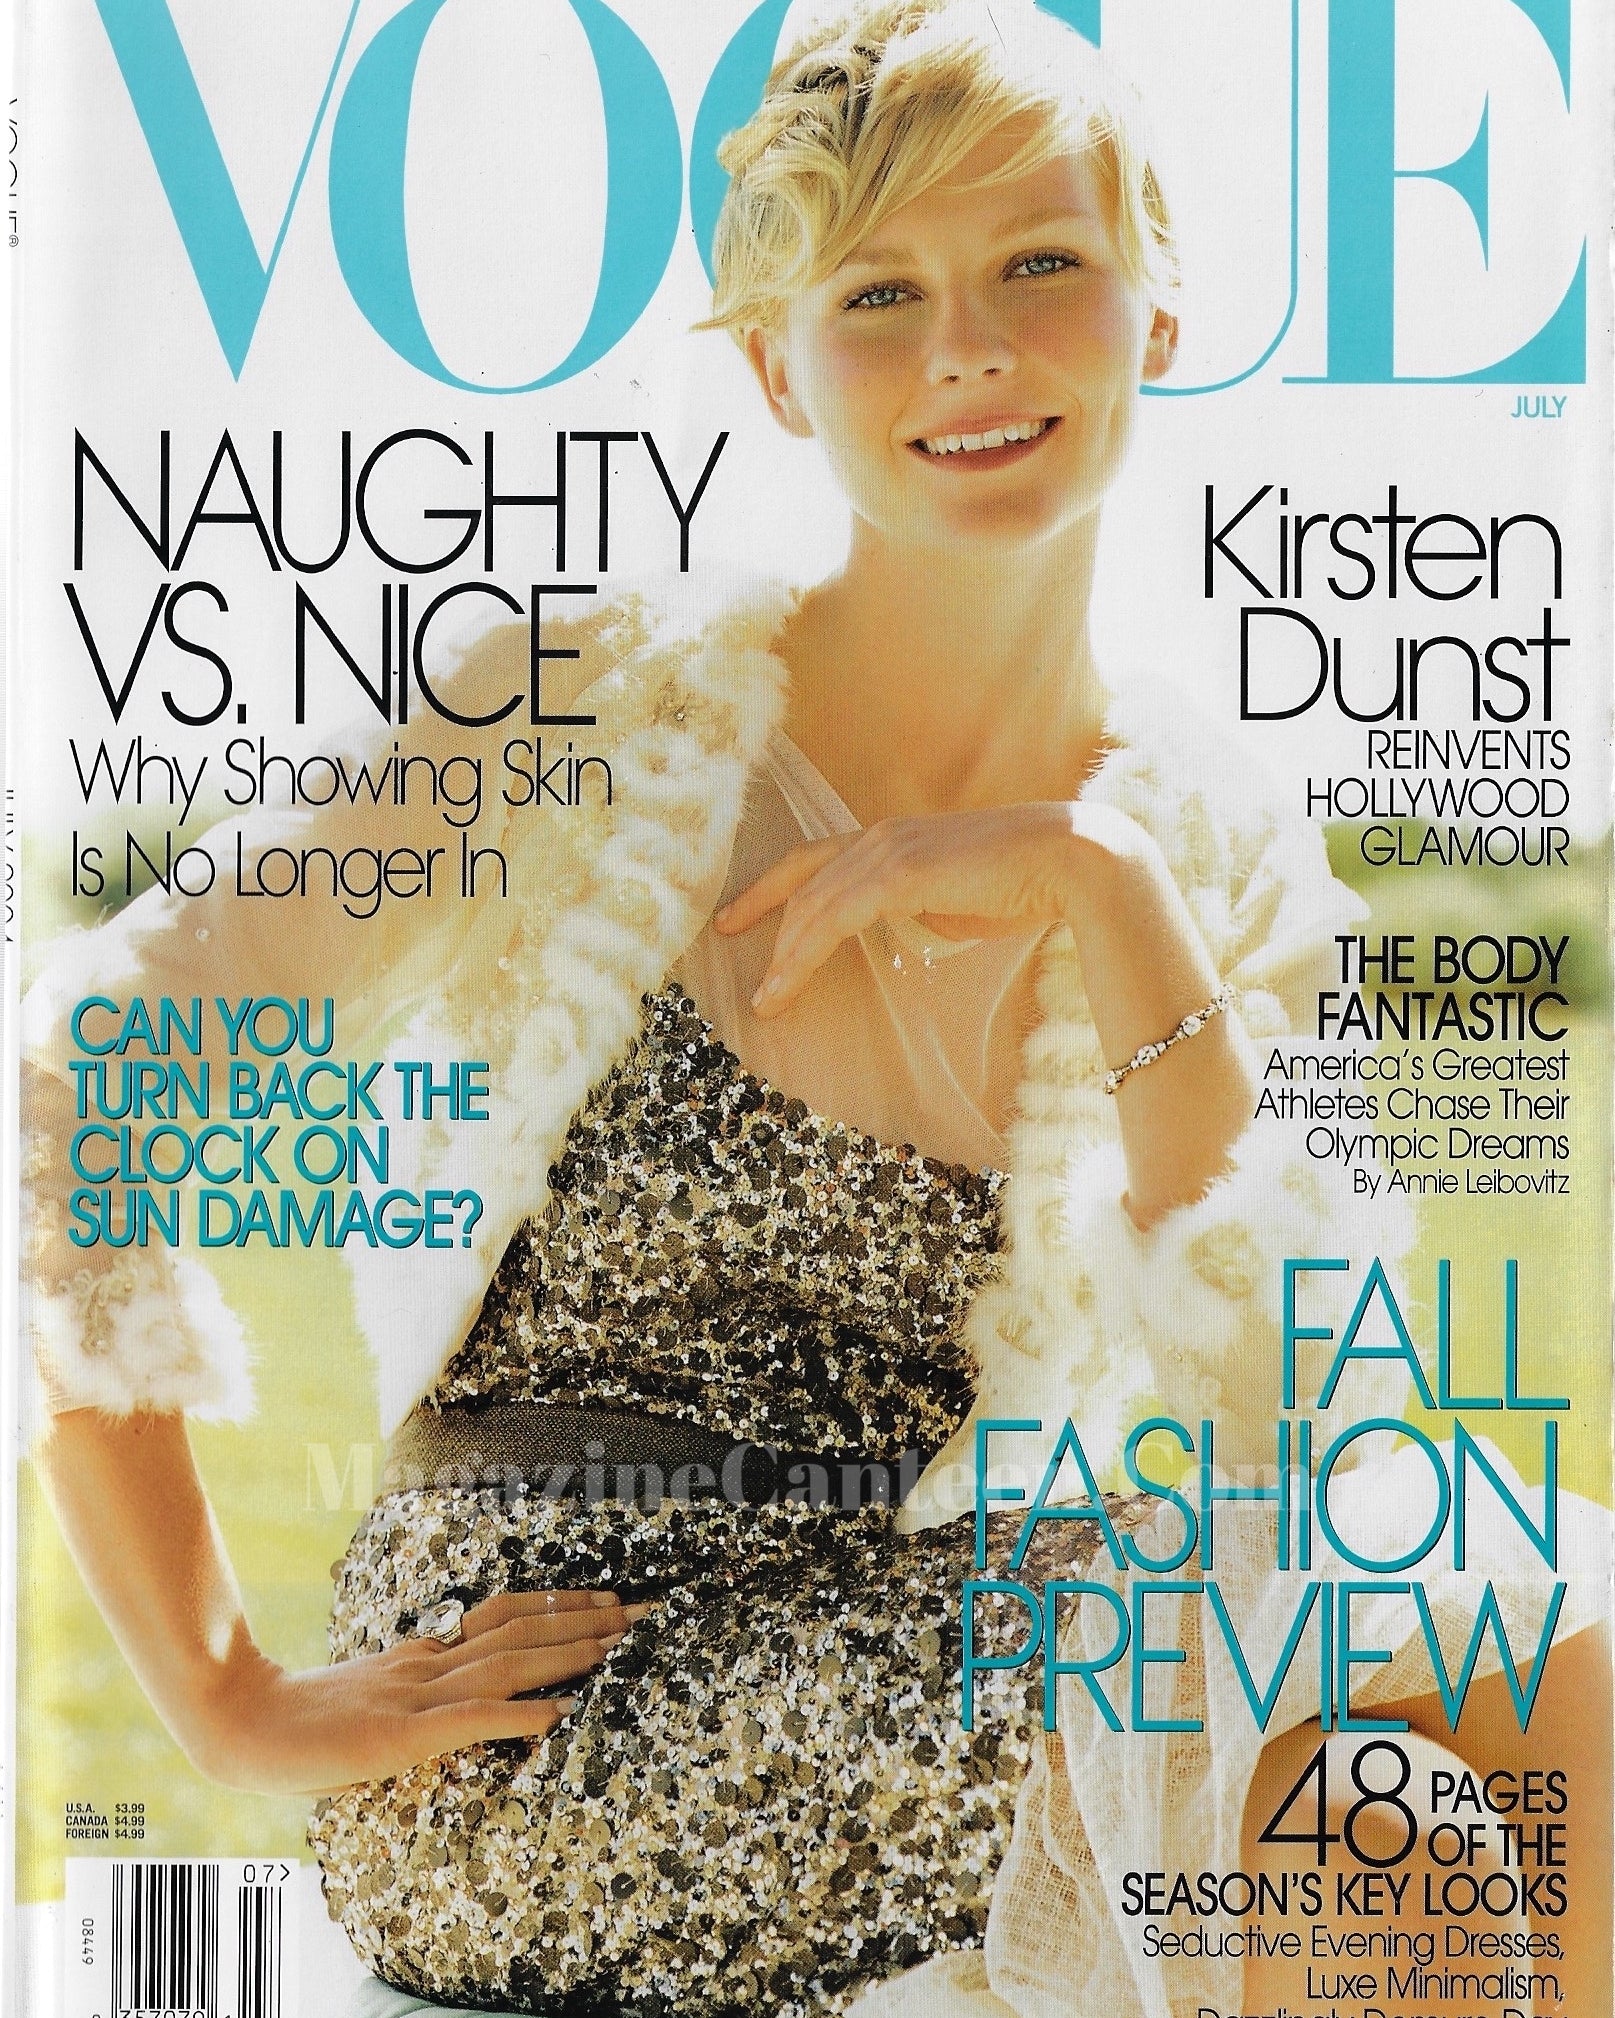 Vogue USA Magazine July 2004 - Kirsten Dunst